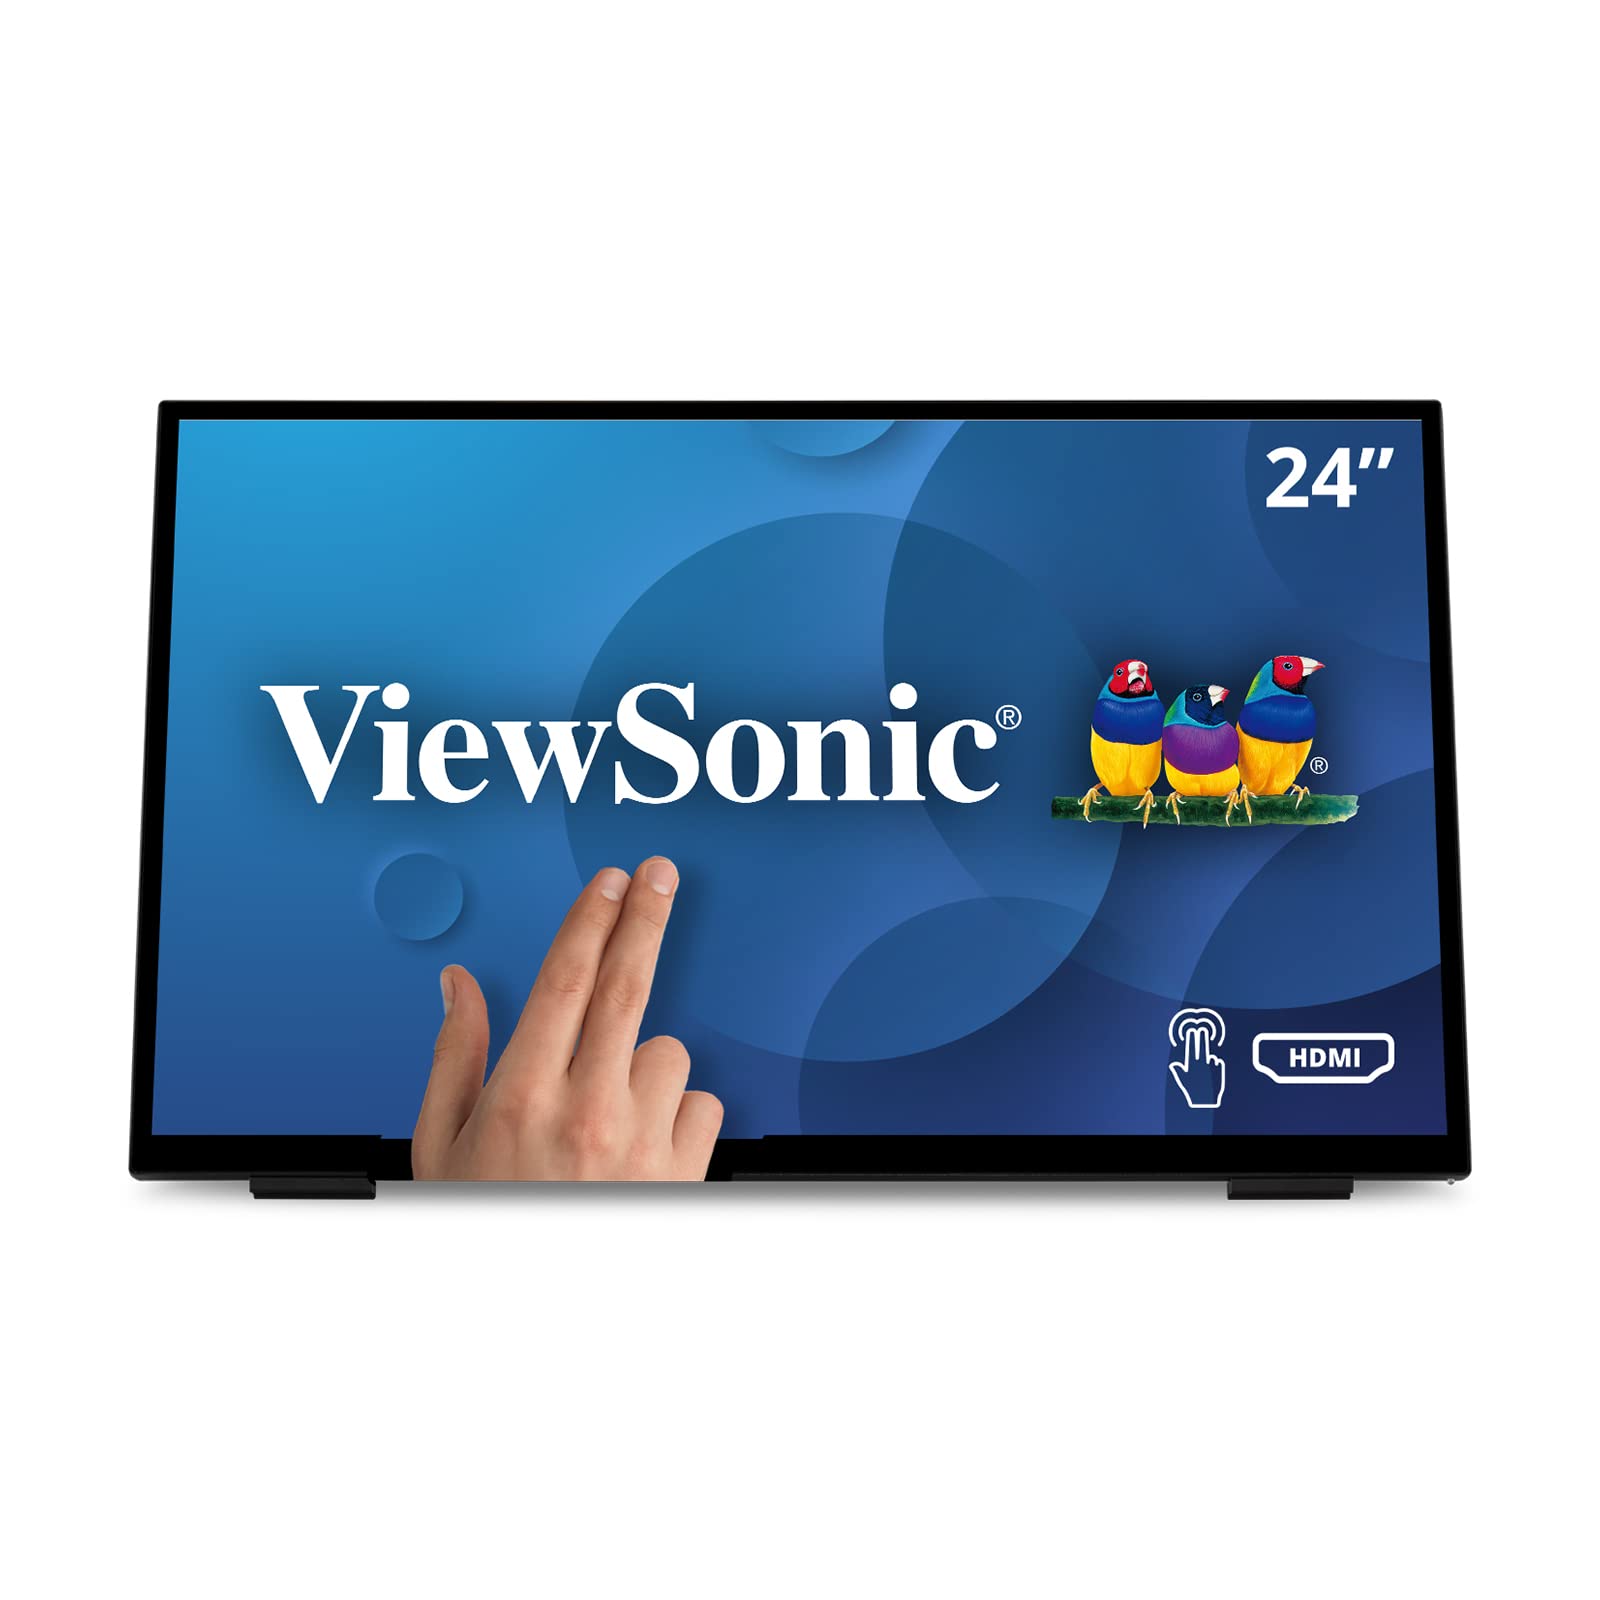 Viewsonic TD2465 59,6 cm (24 Zoll) Touch Monitor (Full-HD, HDMI, USB, 10 Punkt Multitouch, integrierter Ständer, Lautsprecher, 4 Jahre Austauschservice) Schwarz